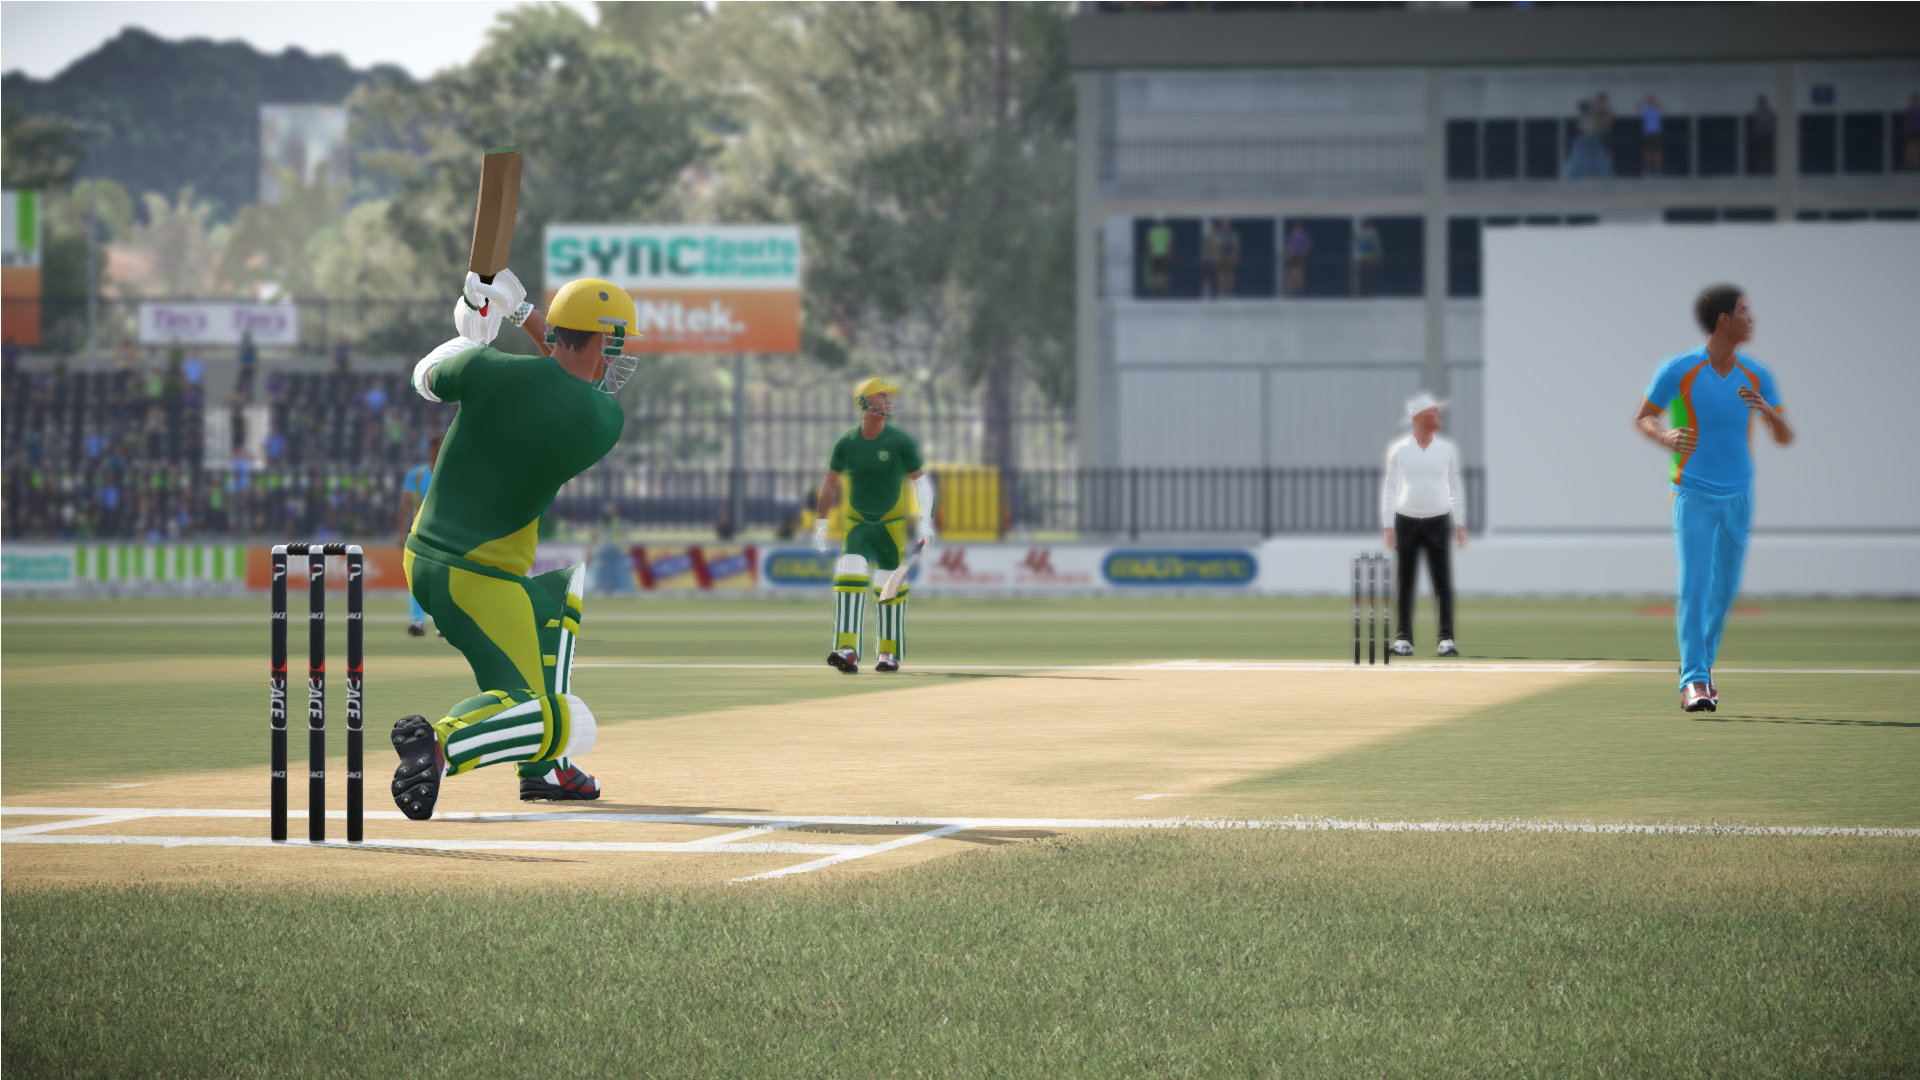 Don Bradman Cricket 17 PC Game Full Free Download